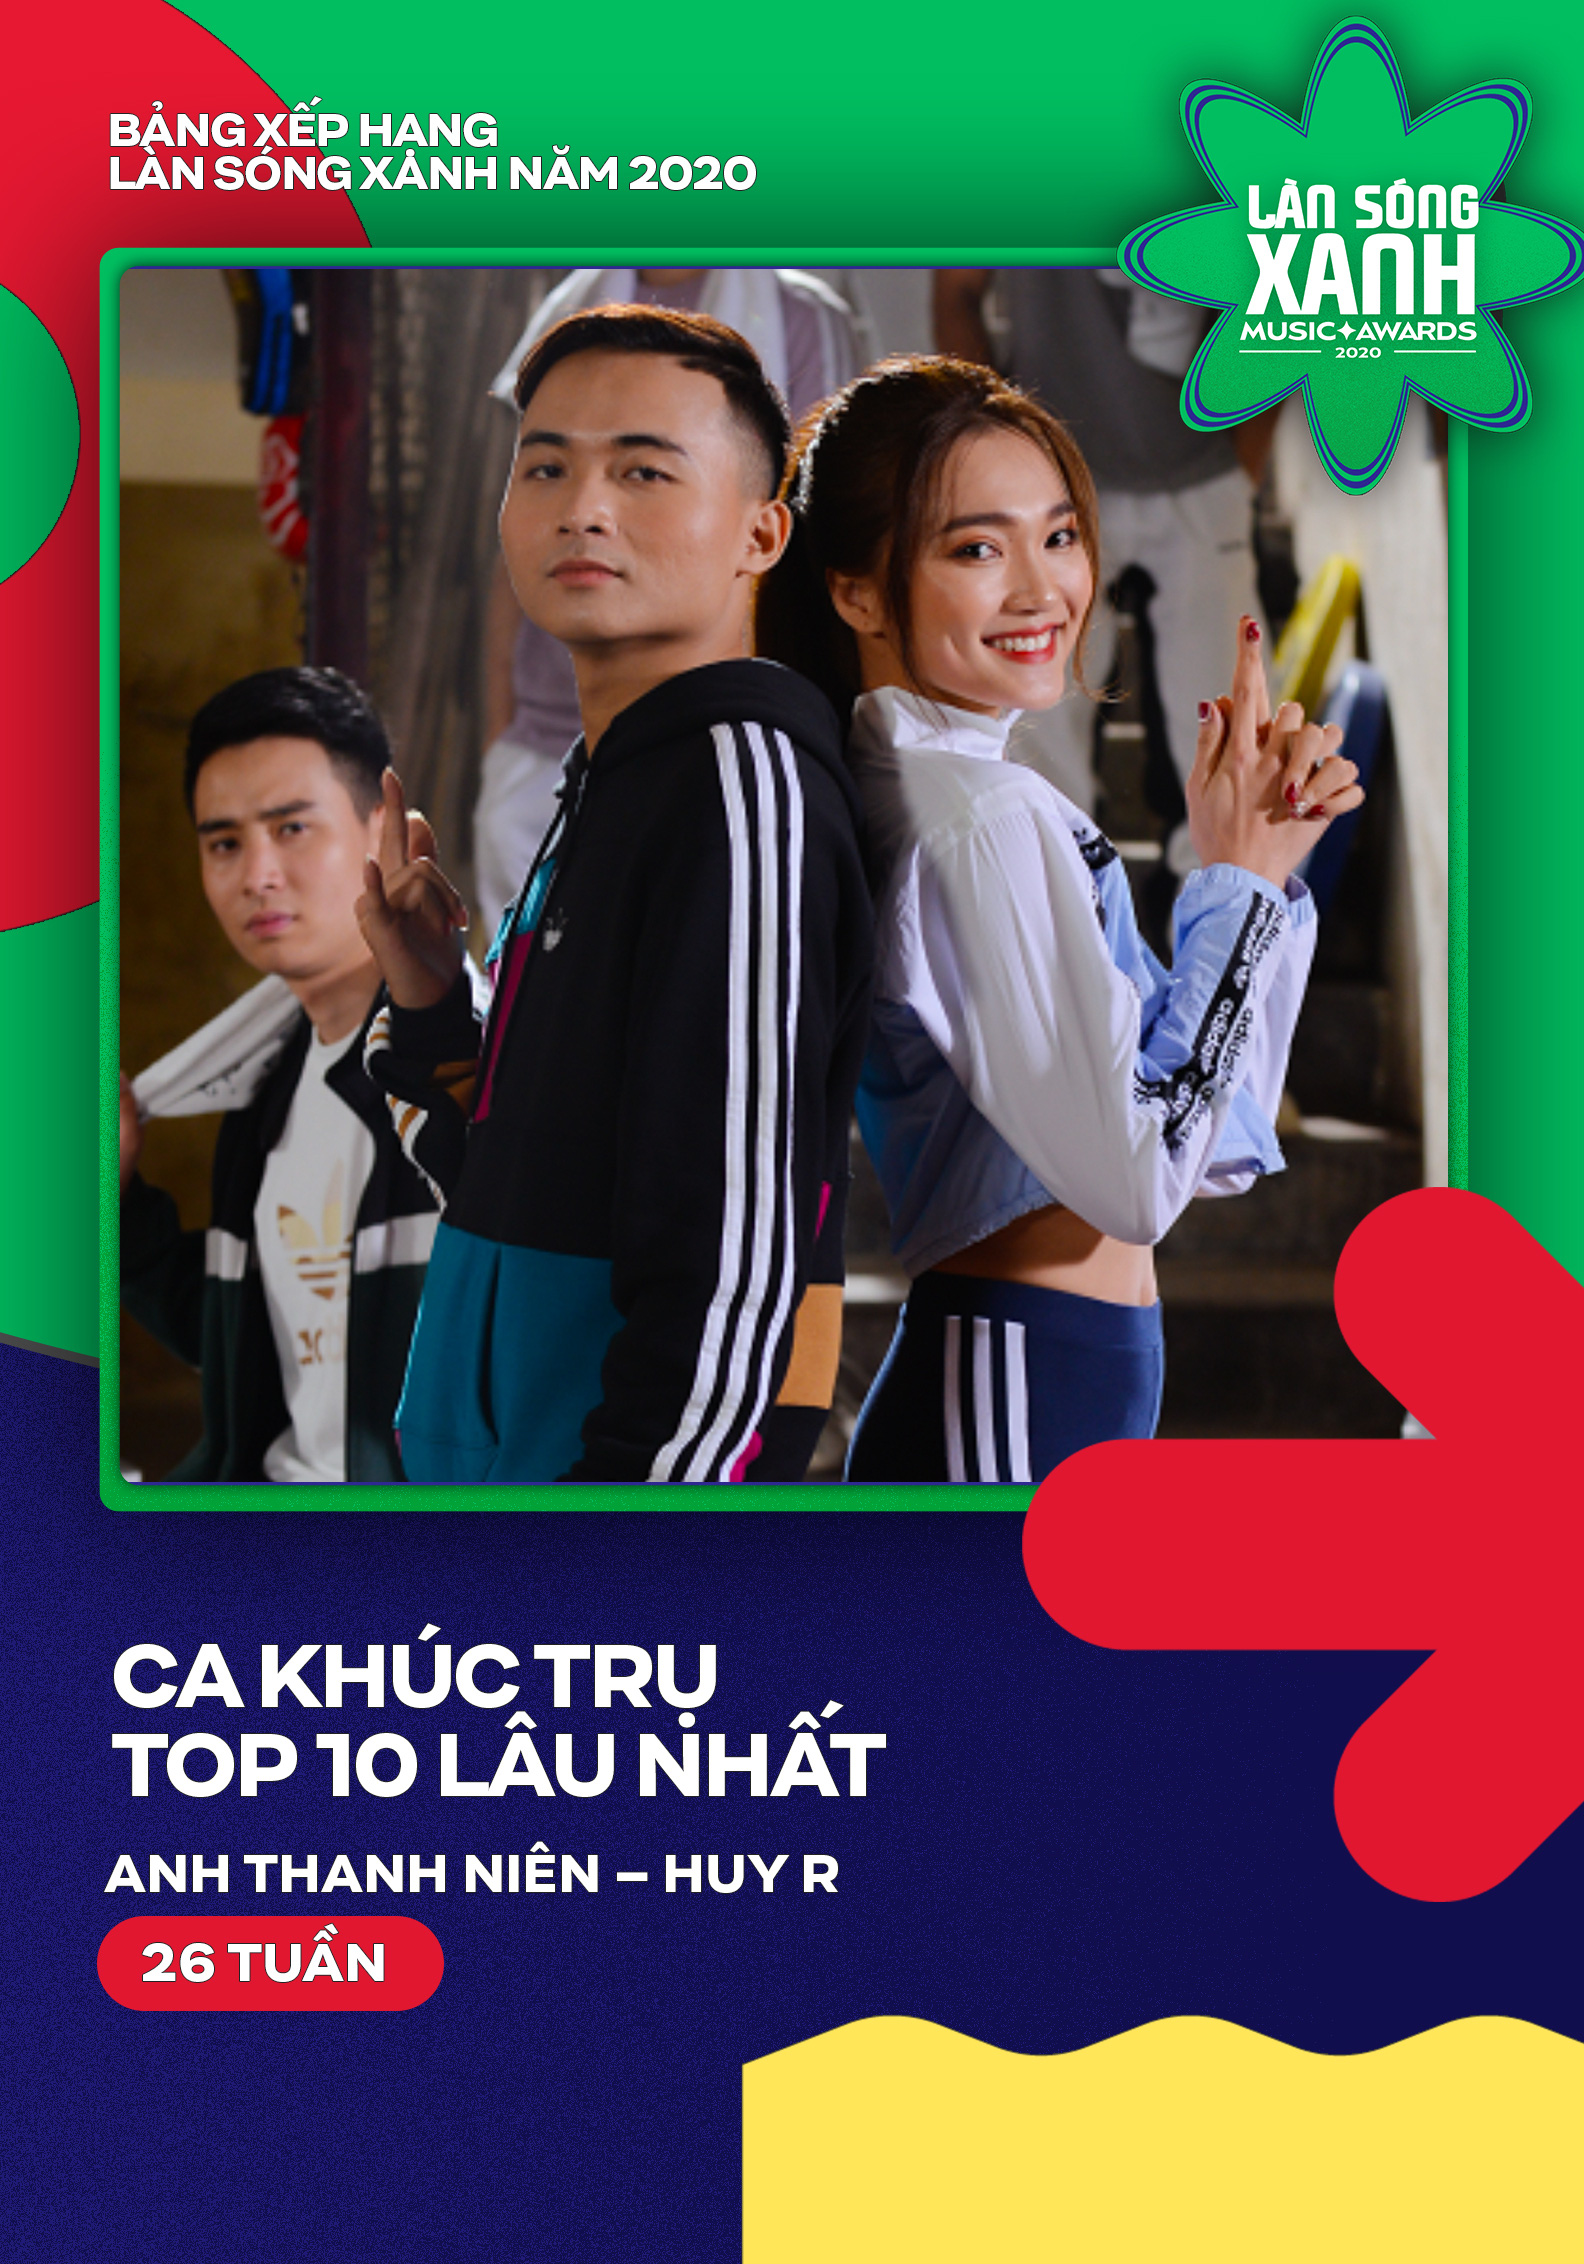 Hoài Lâm, Erik và Jack thống trị bảng xếp hạng Làn sóng xanh 2020 - Ảnh 1.